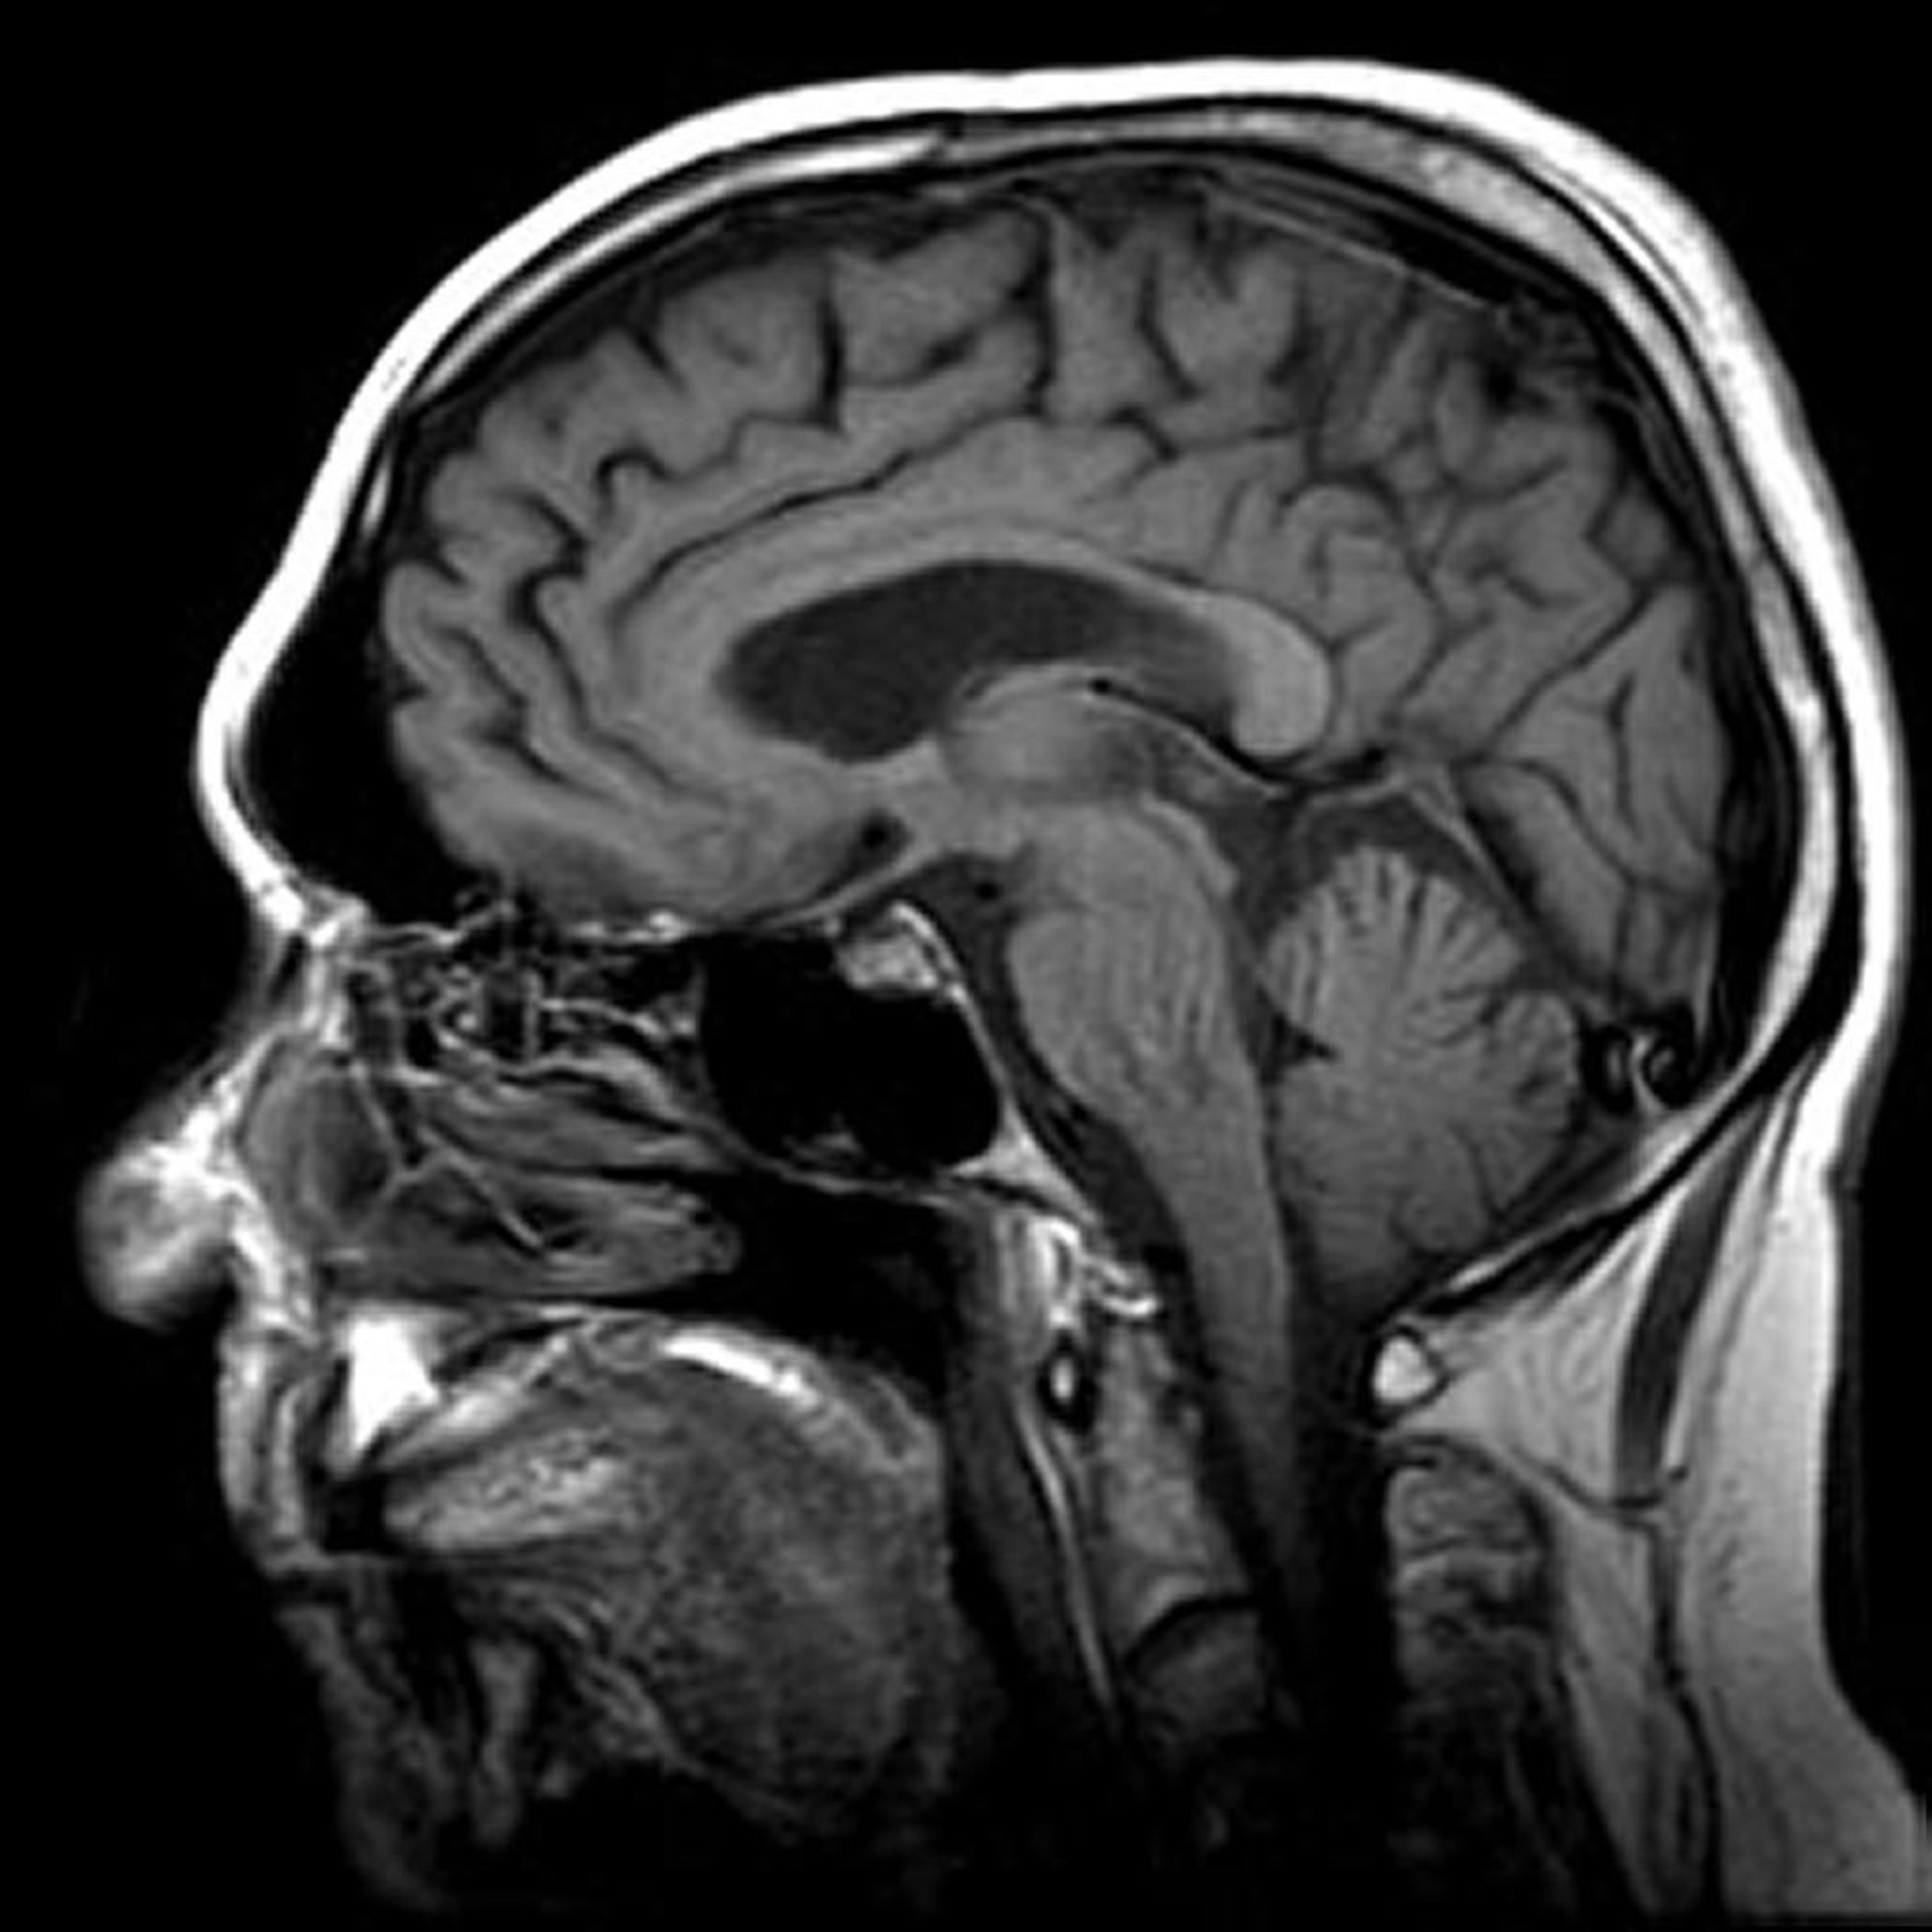 Imagerie par résonance magnétique (IRM) du cerveau